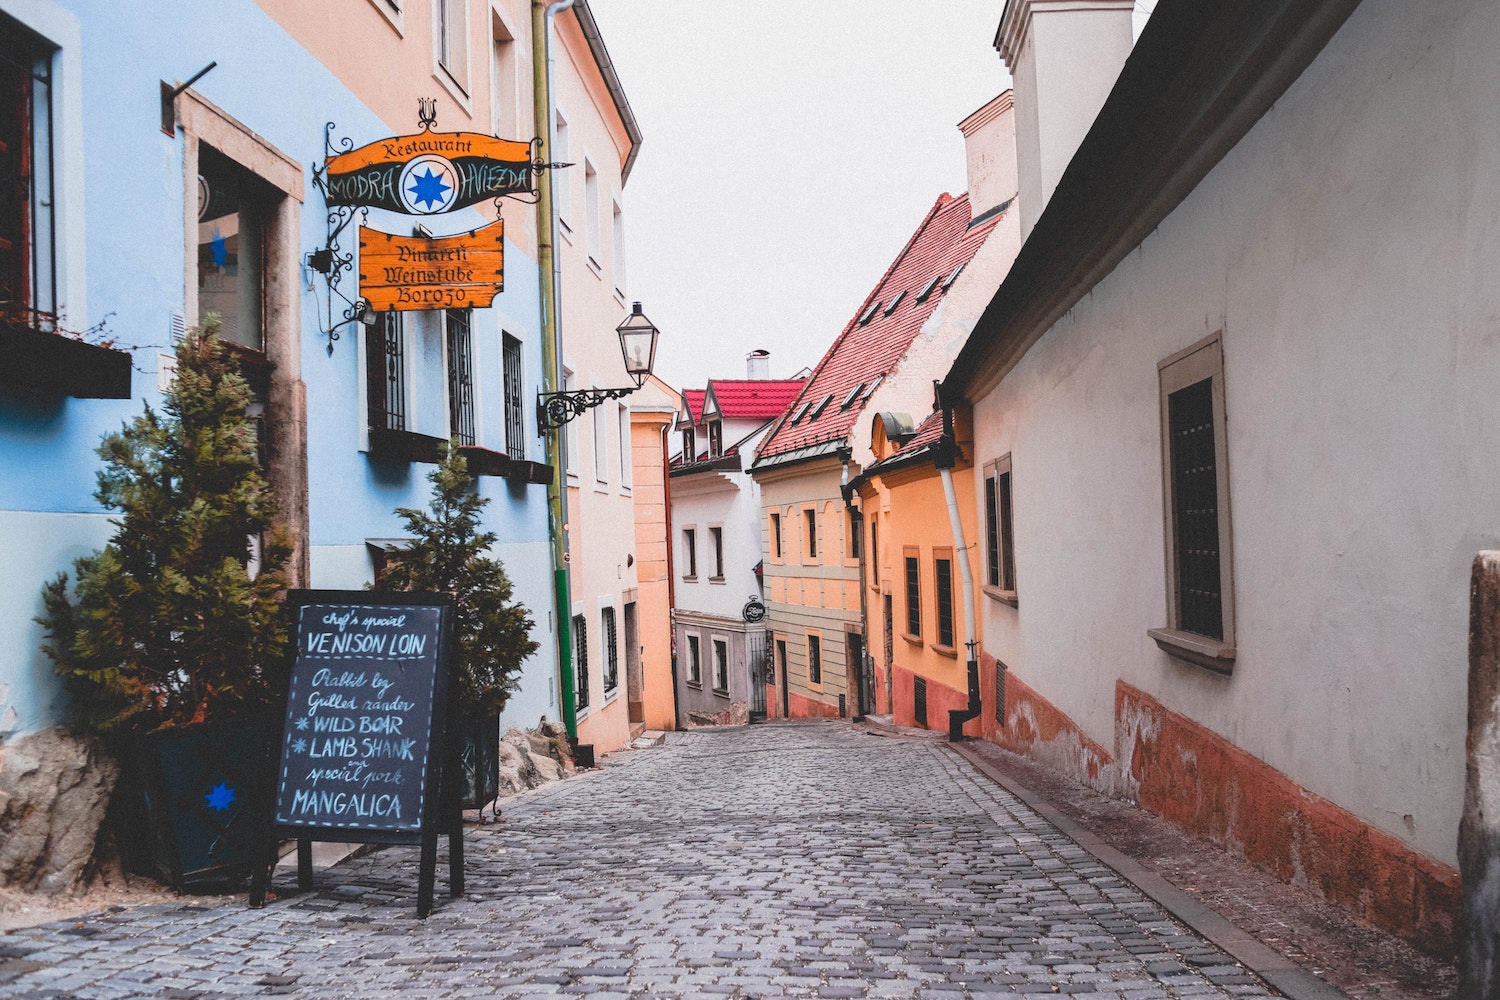 Beblavého Street in Bratislava. Image: Anastasia Dulgier under a CC license